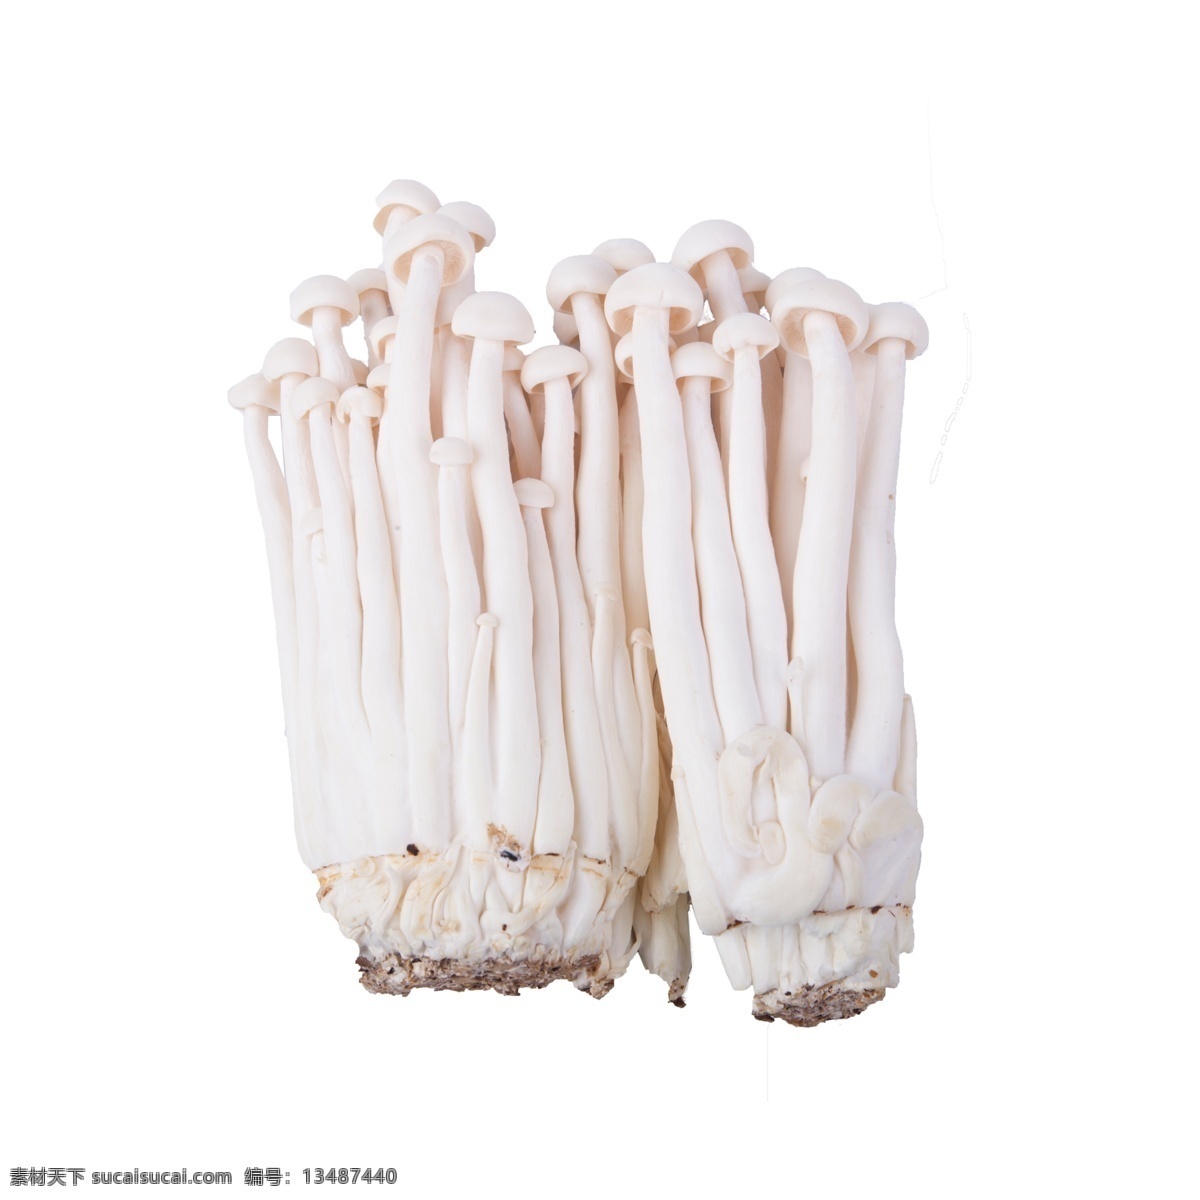 海 鲜菇 免 抠 海鲜菇 菌菇类 摆拍 蔬菜 营养 实物 拍摄 白色 蘑菇 食物 食材 海鲜菇免抠